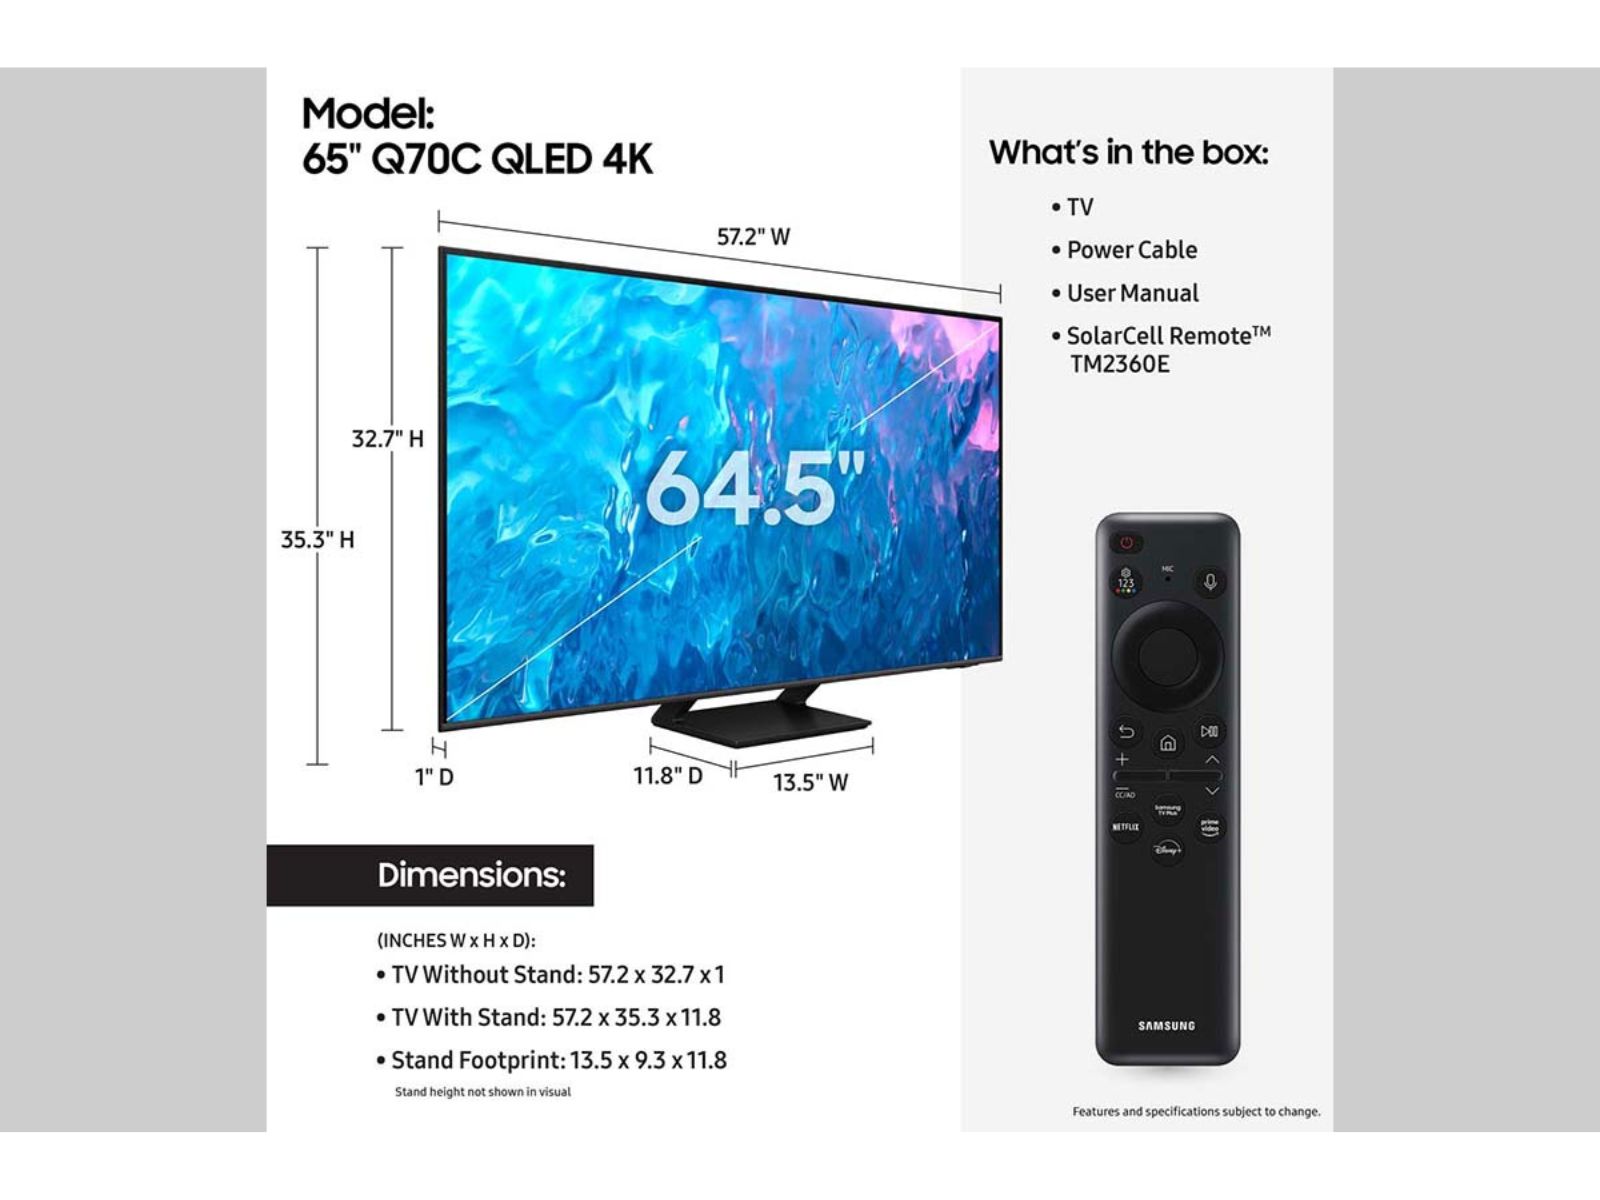 TV QLED Samsung 65 pulgadas 4K Ultra HD/Digital/Wifi + Sound Bar HW -  SuenoHogar - ID 781073